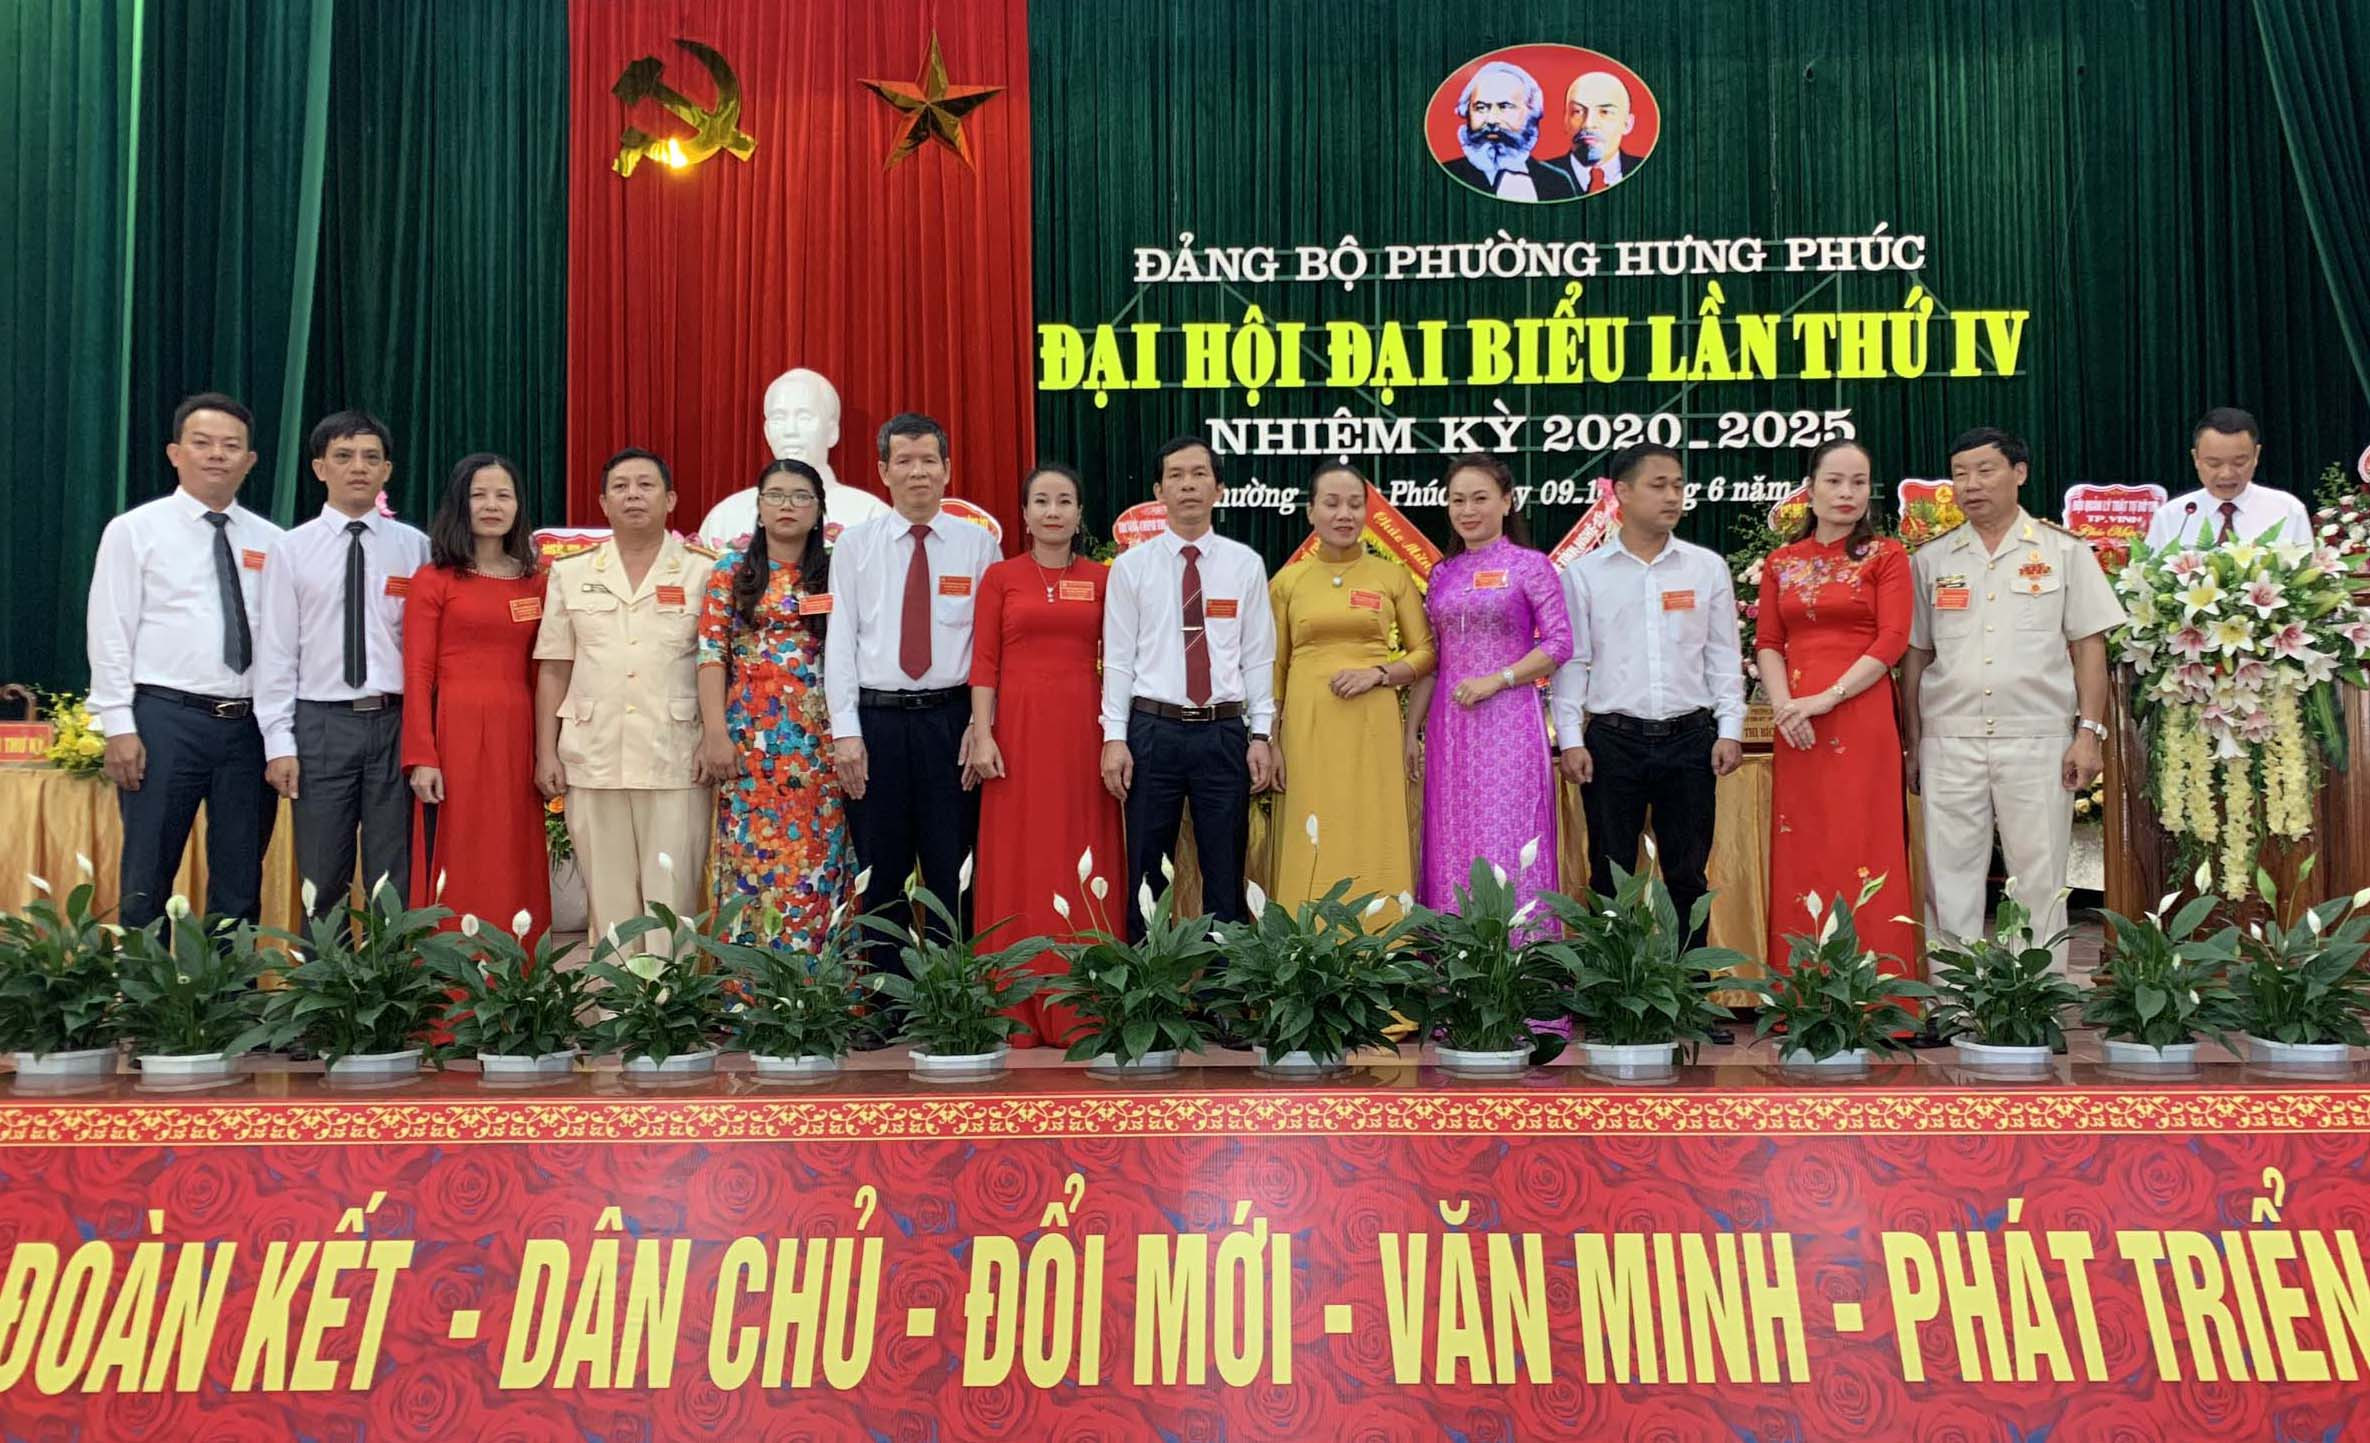 Ban chấp hành Đảng bộ phường Hưng Phúc nhiệm kỳ 2020 - 2025 ra mắt nhận nhiệm vụ